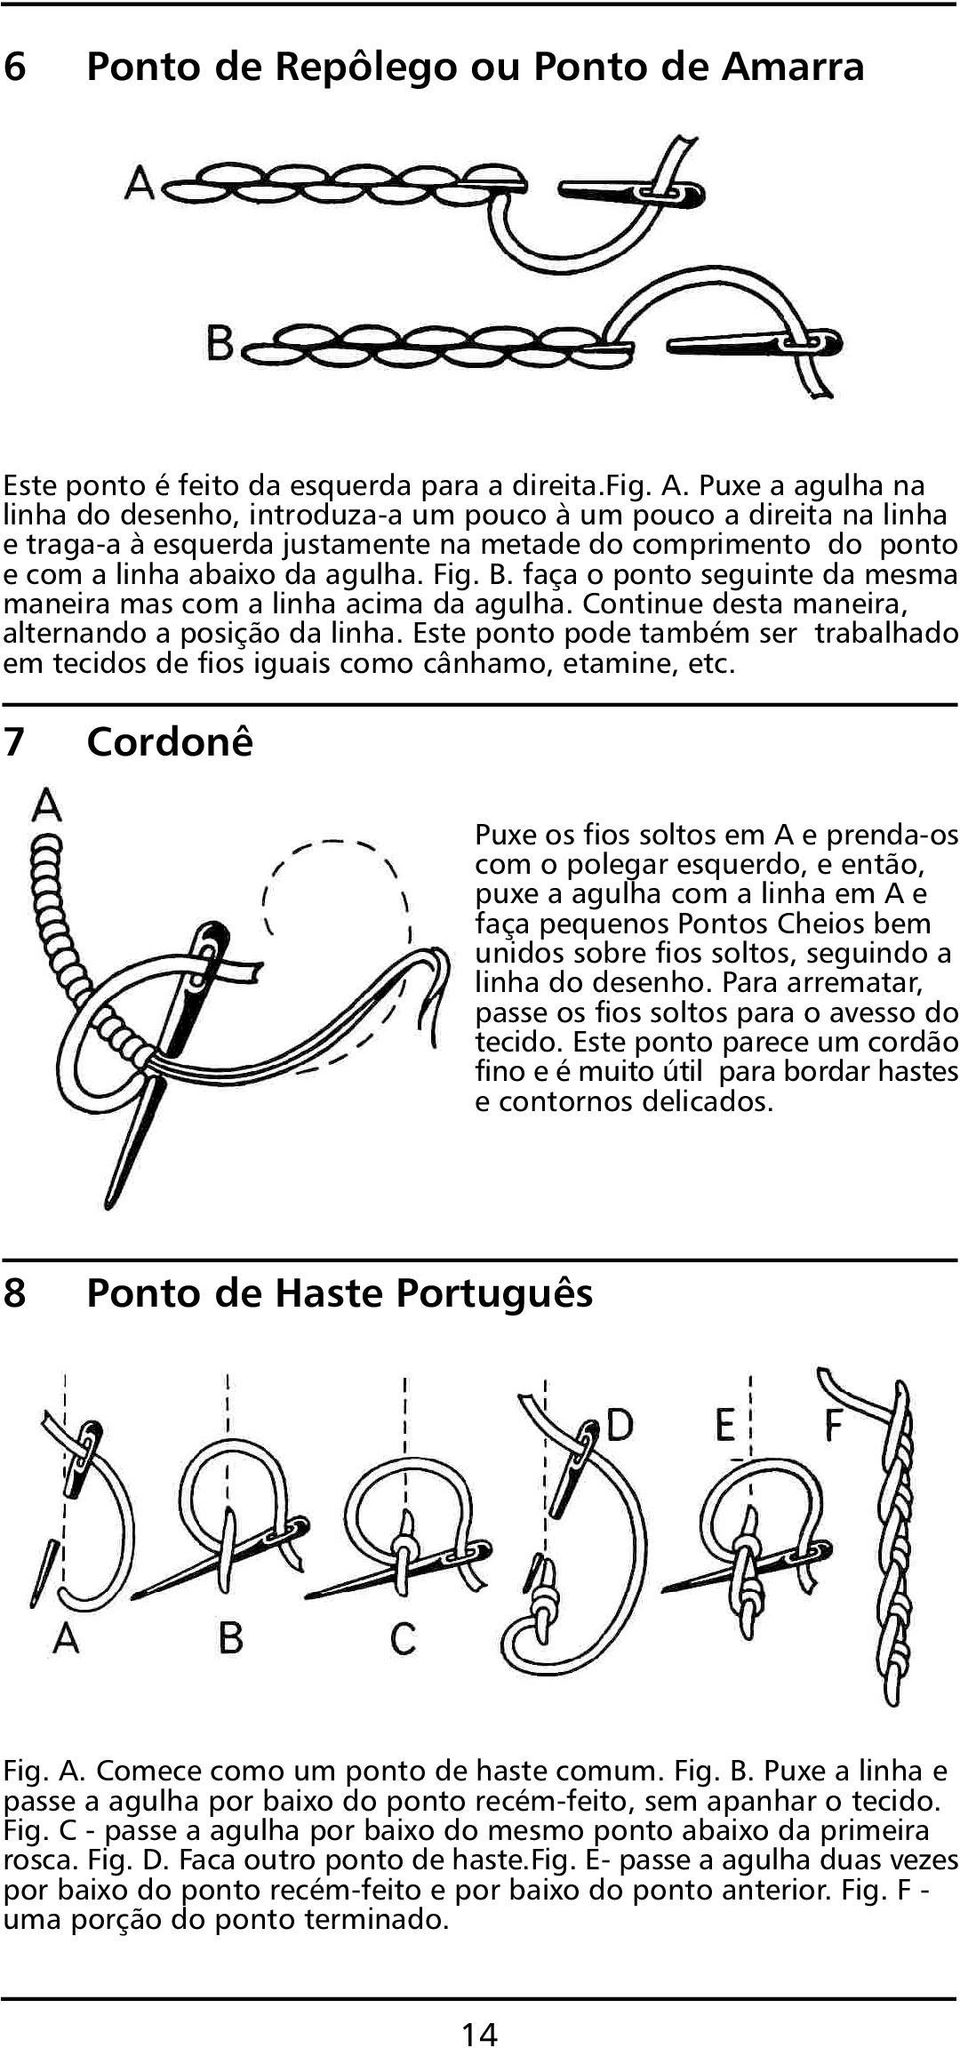 100 Pontos de Bordado - PDF Free Download